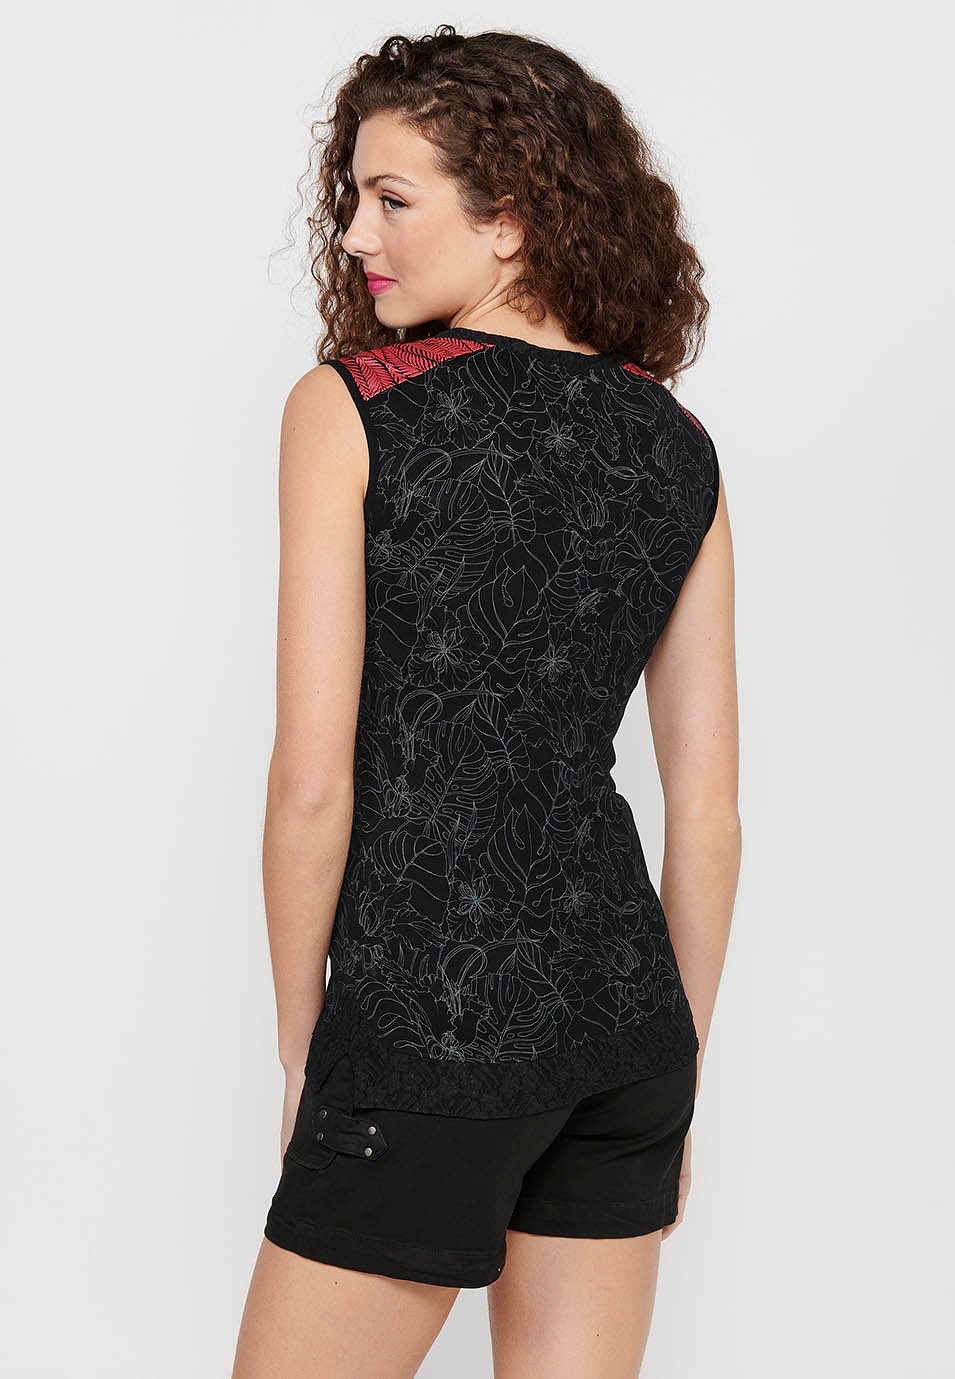 Camiseta sin mangas con Bordado floral delantero y Cuello redondo de Color Negro para Mujer 8